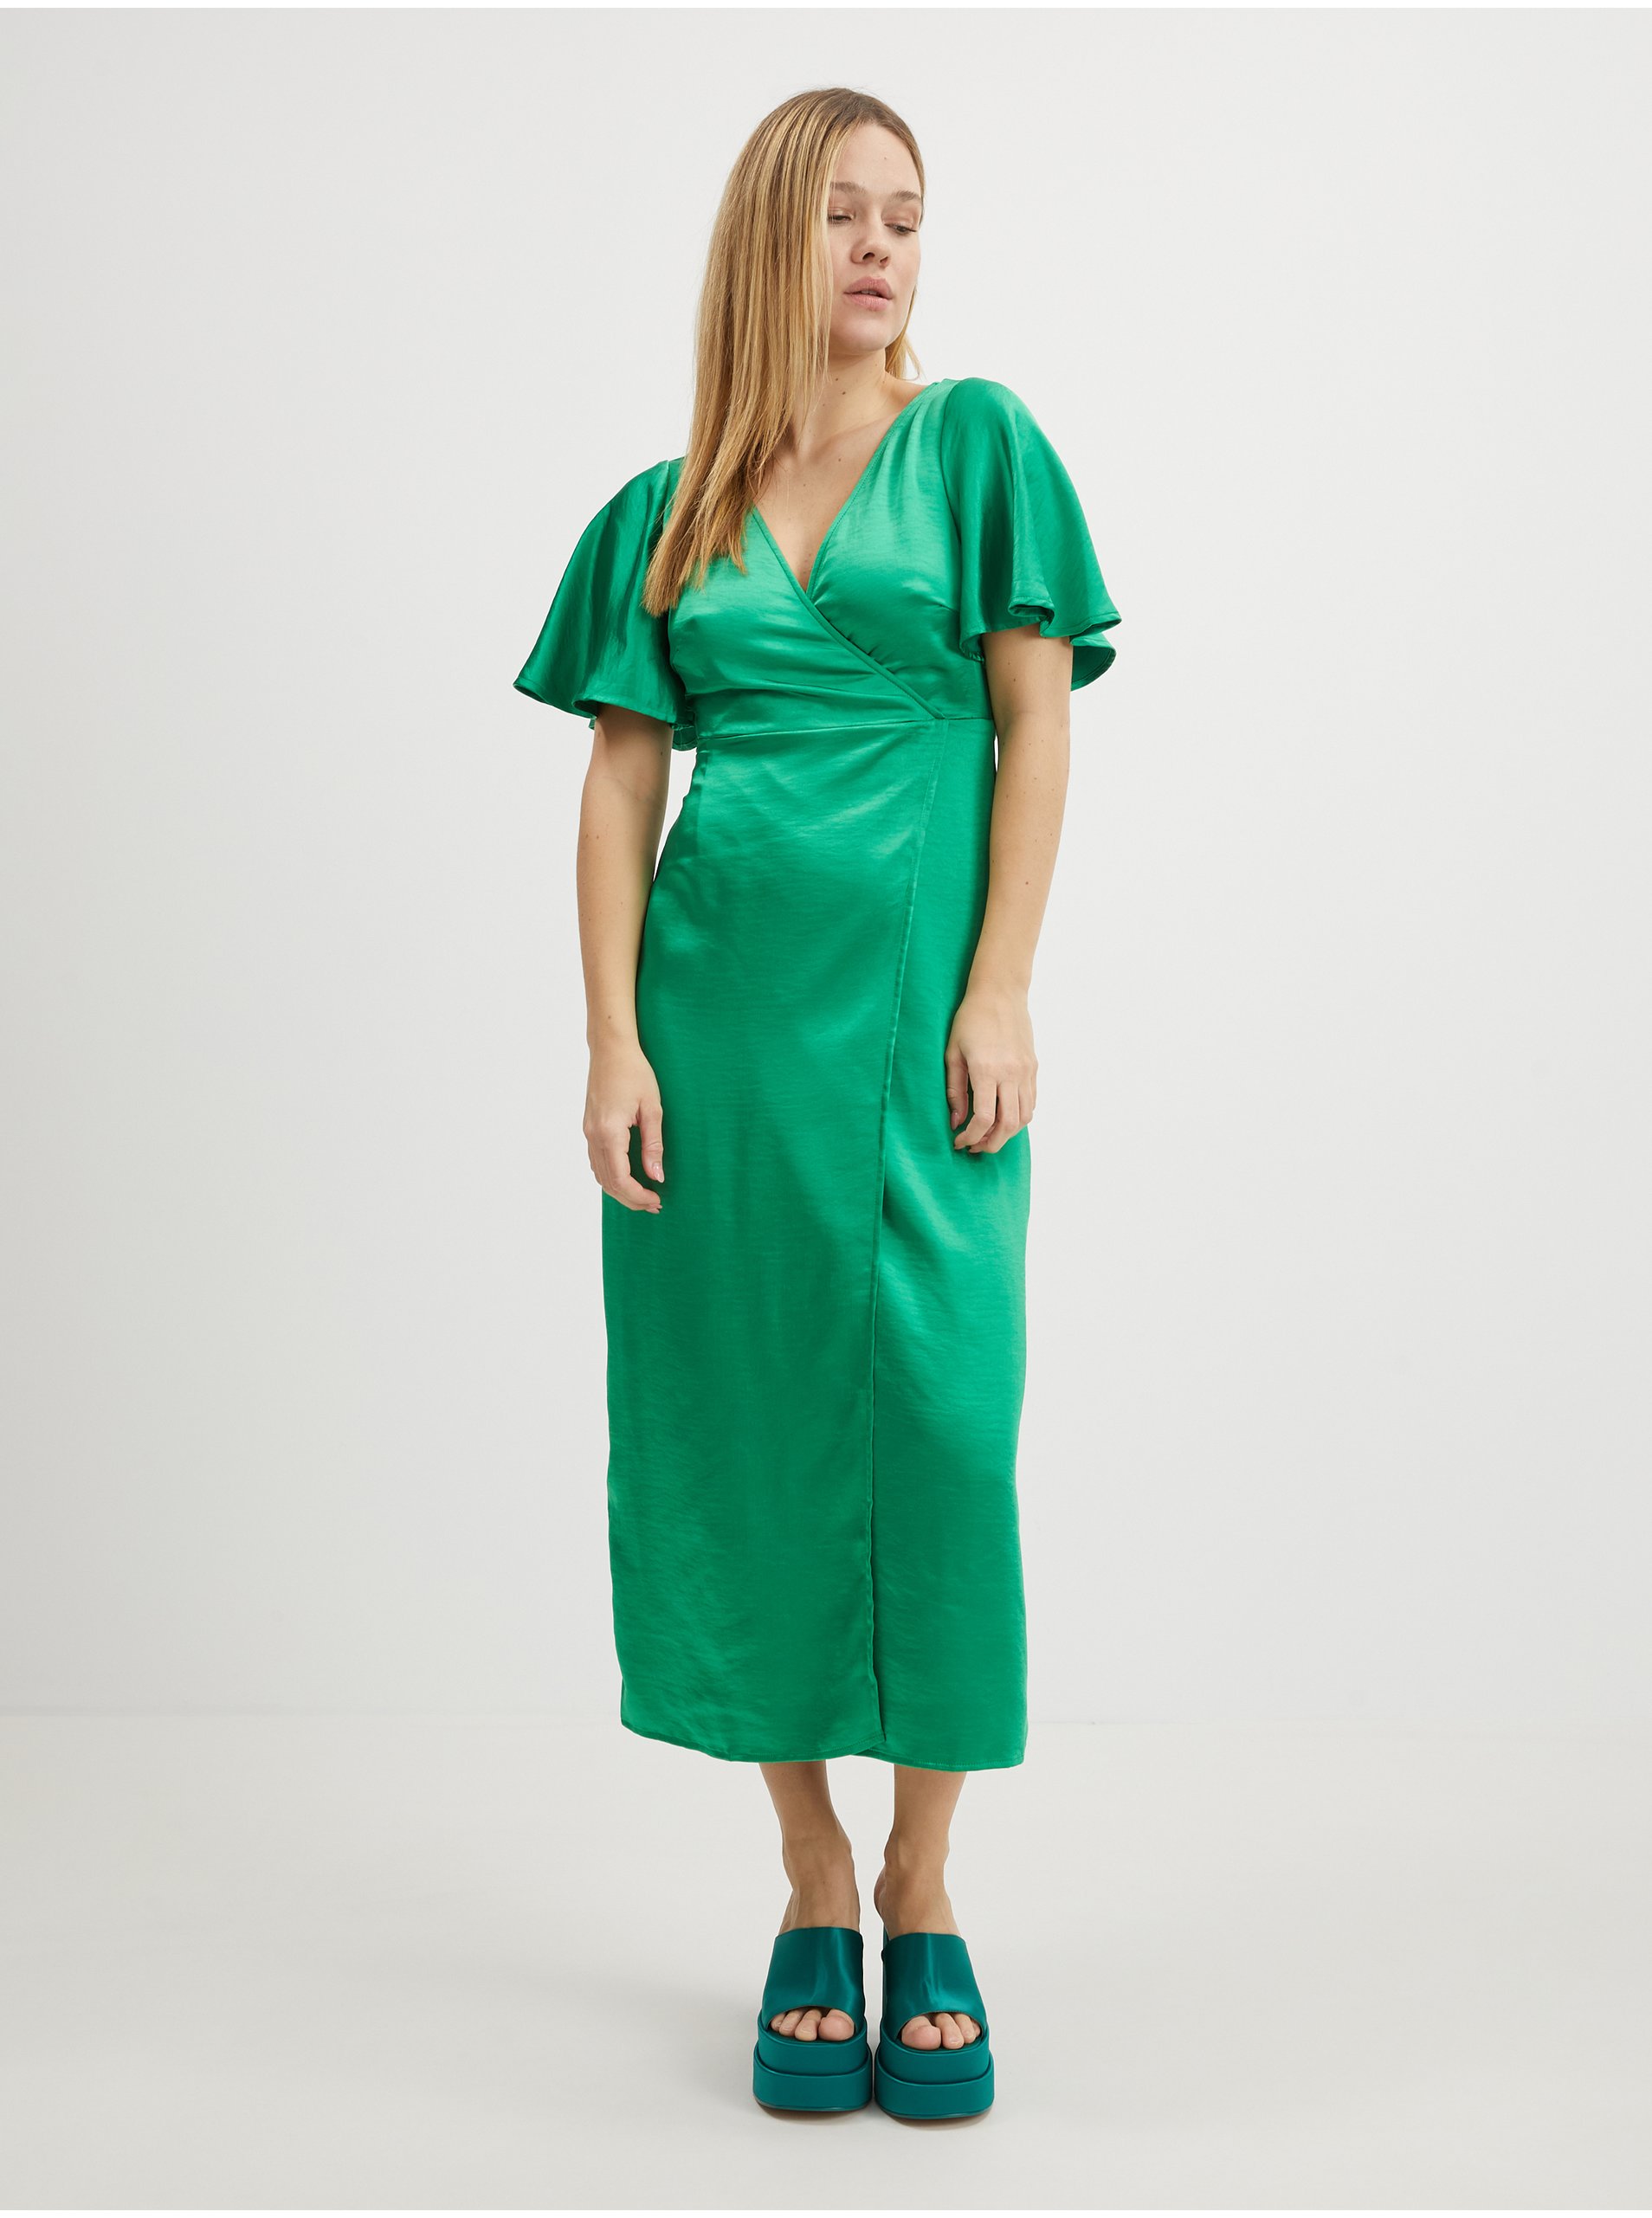 Lacno Spoločenské šaty pre ženy VILA - zelená